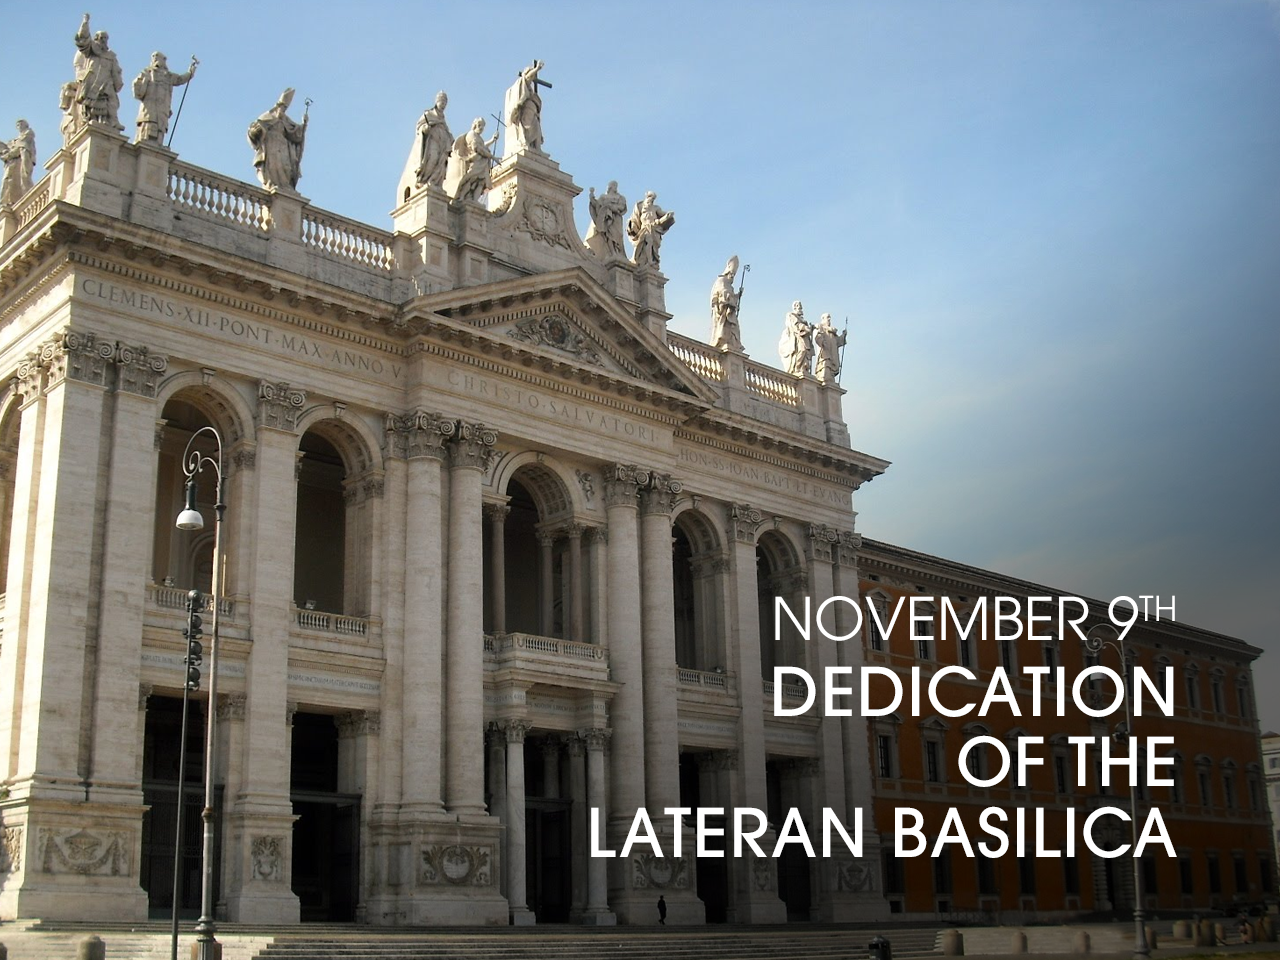 Dedication of St. John Lateran Basilica in Rome